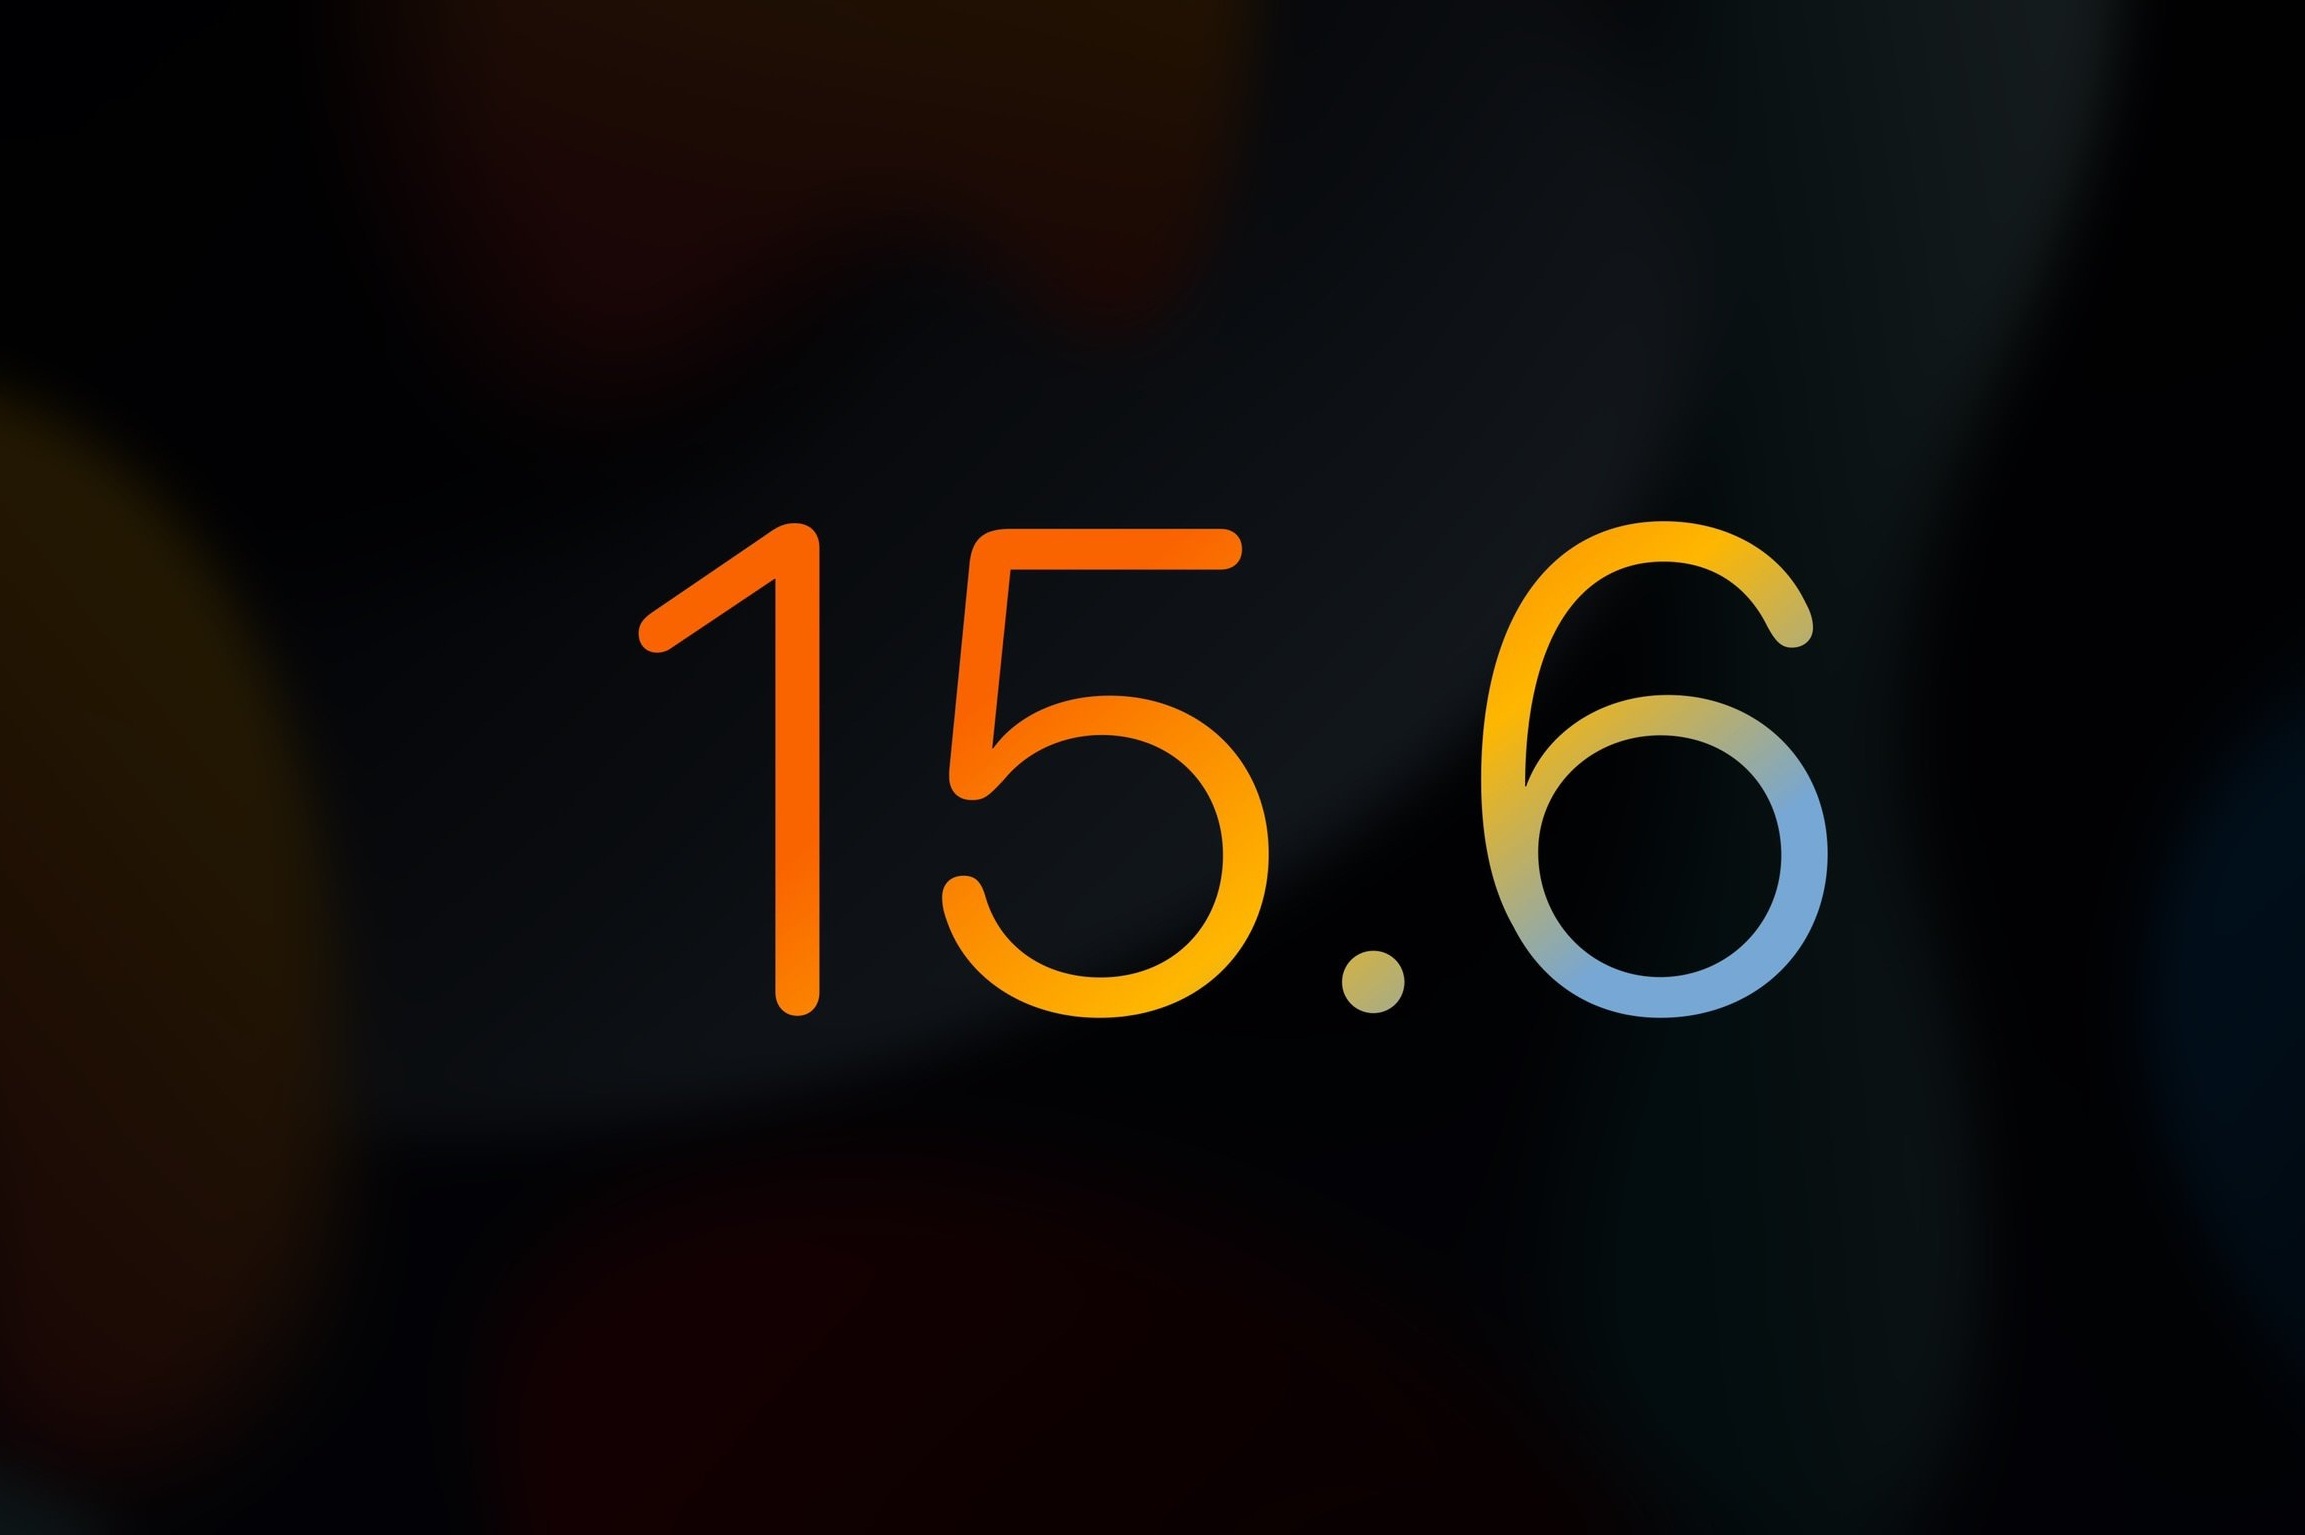 iOS 15.6 beta 3 cập nhật những gì?